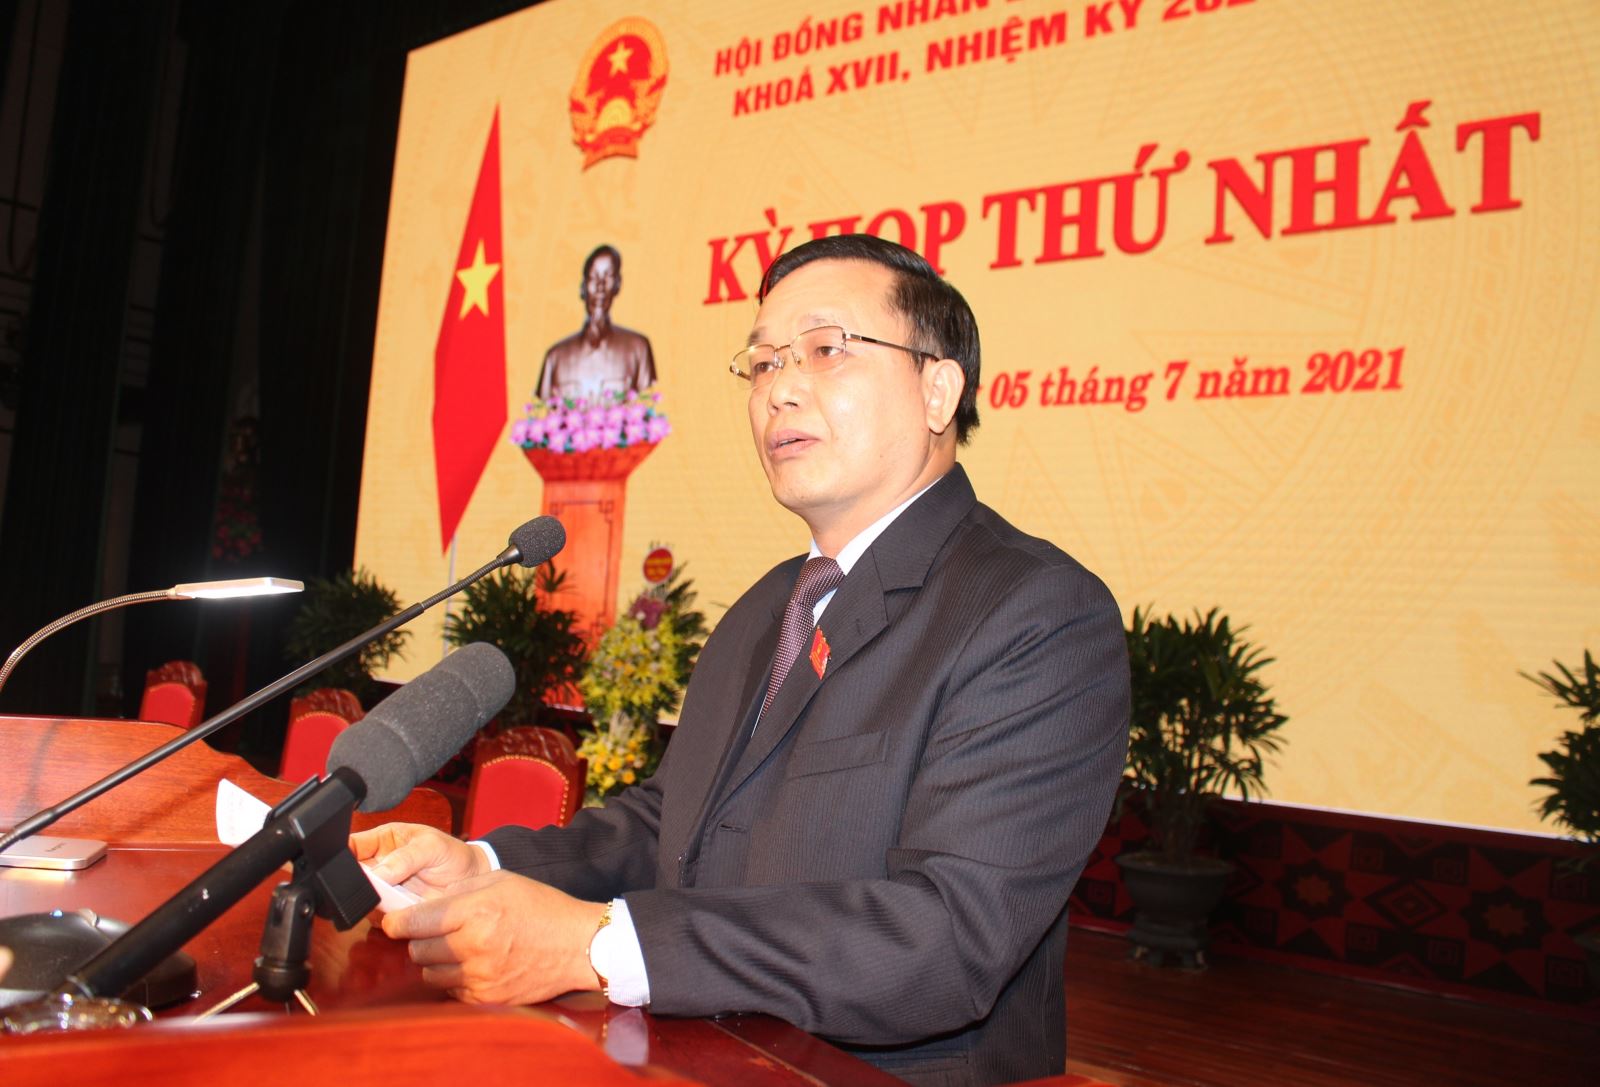 Phó Bí thư Thường trực Tỉnh ủy, Chủ tịch HĐND tỉnh Triệu Đình Lê phát biểu nhận nhiệm vụ